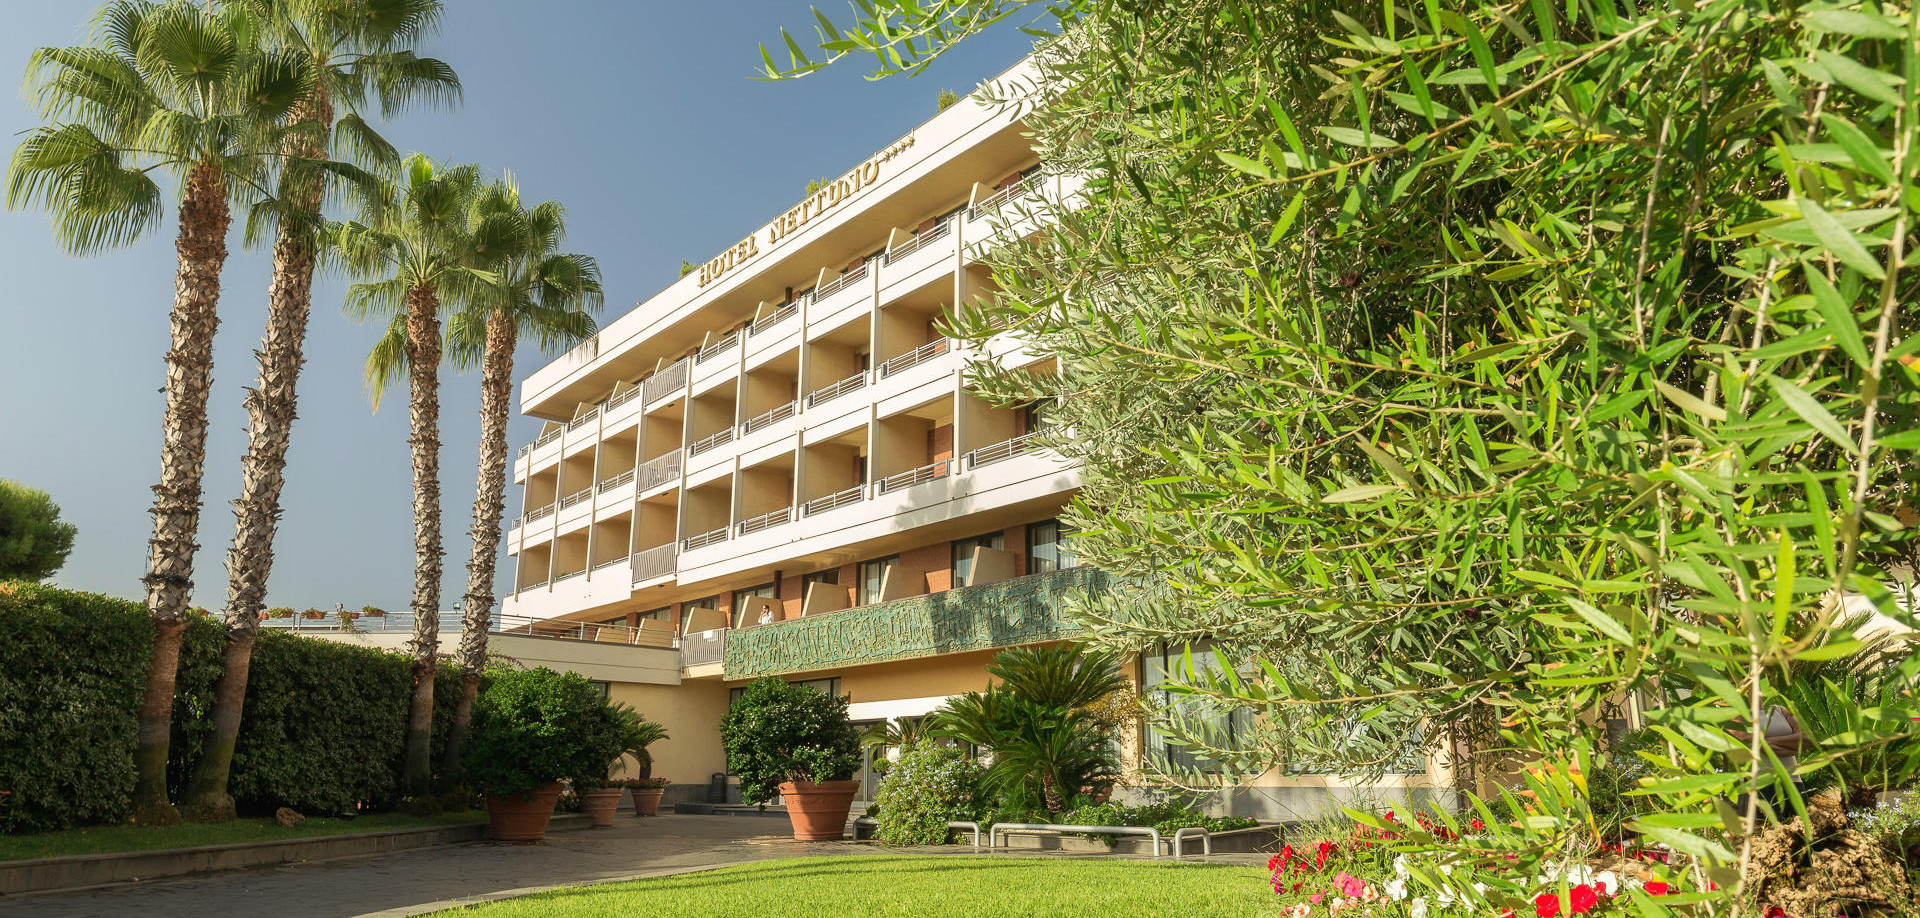 Hotel Nettuno 4 stelle a Catania